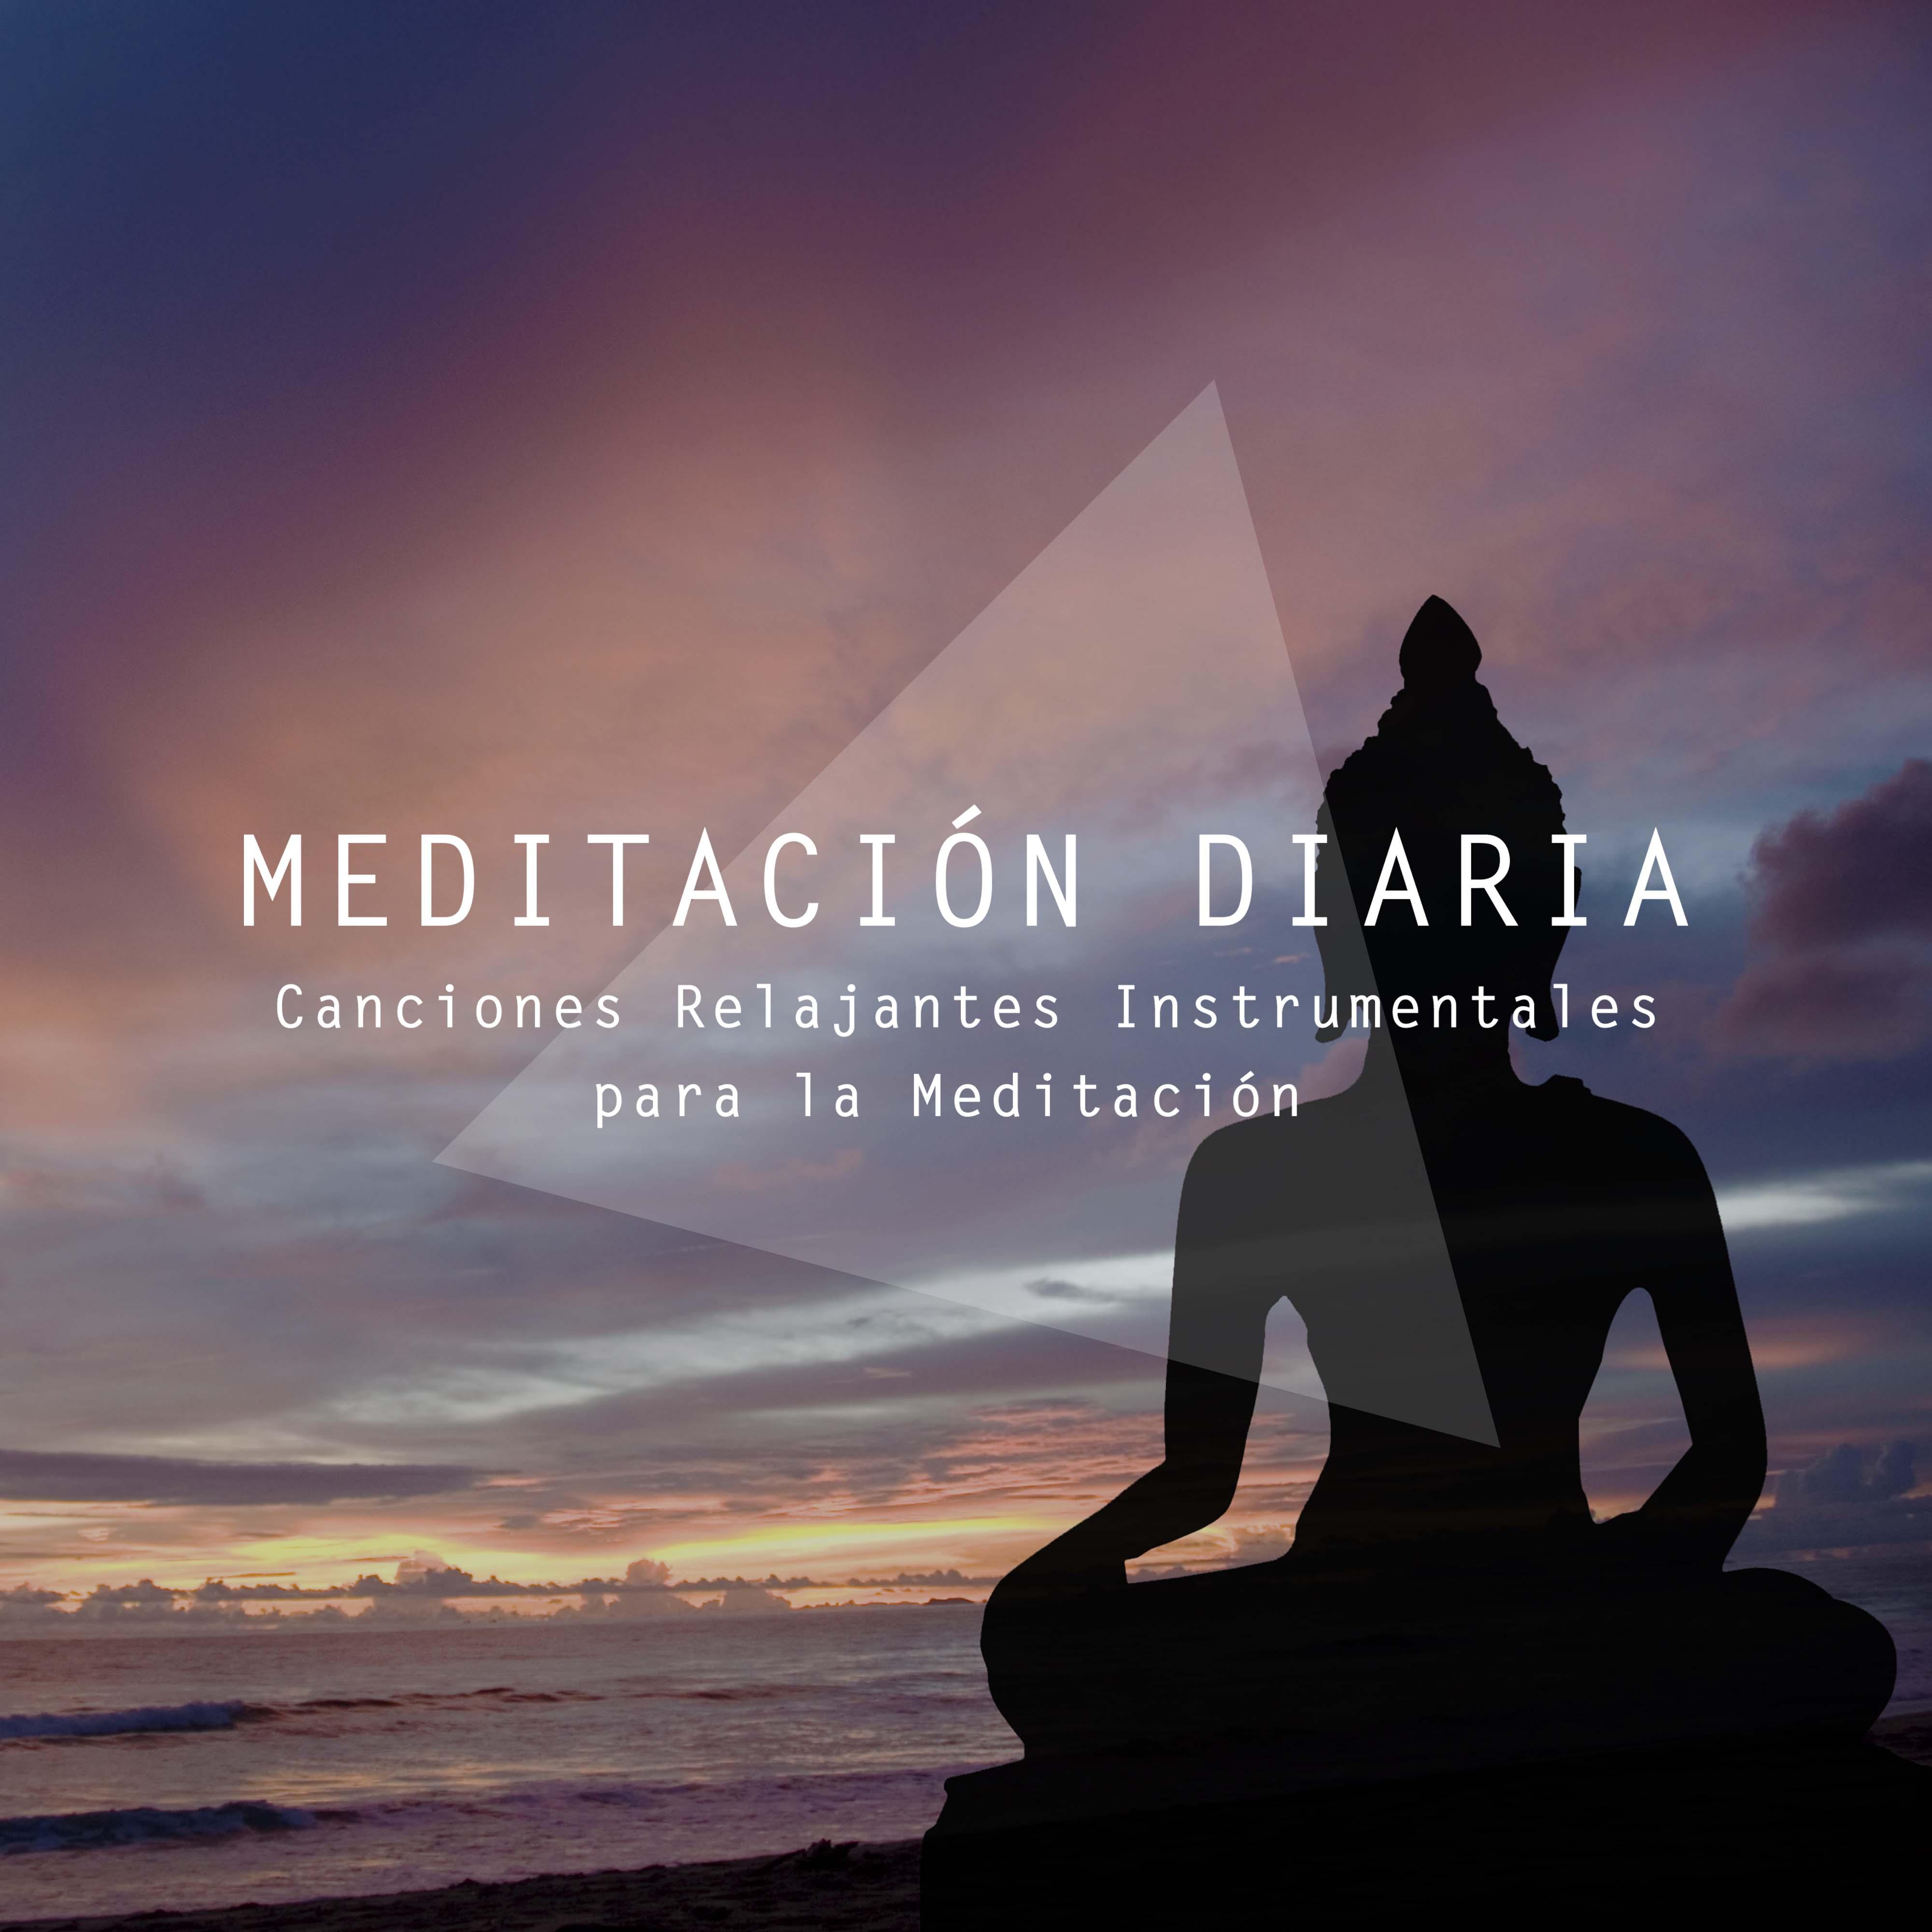 Meditacio n Diaria  Canciones Relajantes Instrumentales para la Meditacio n